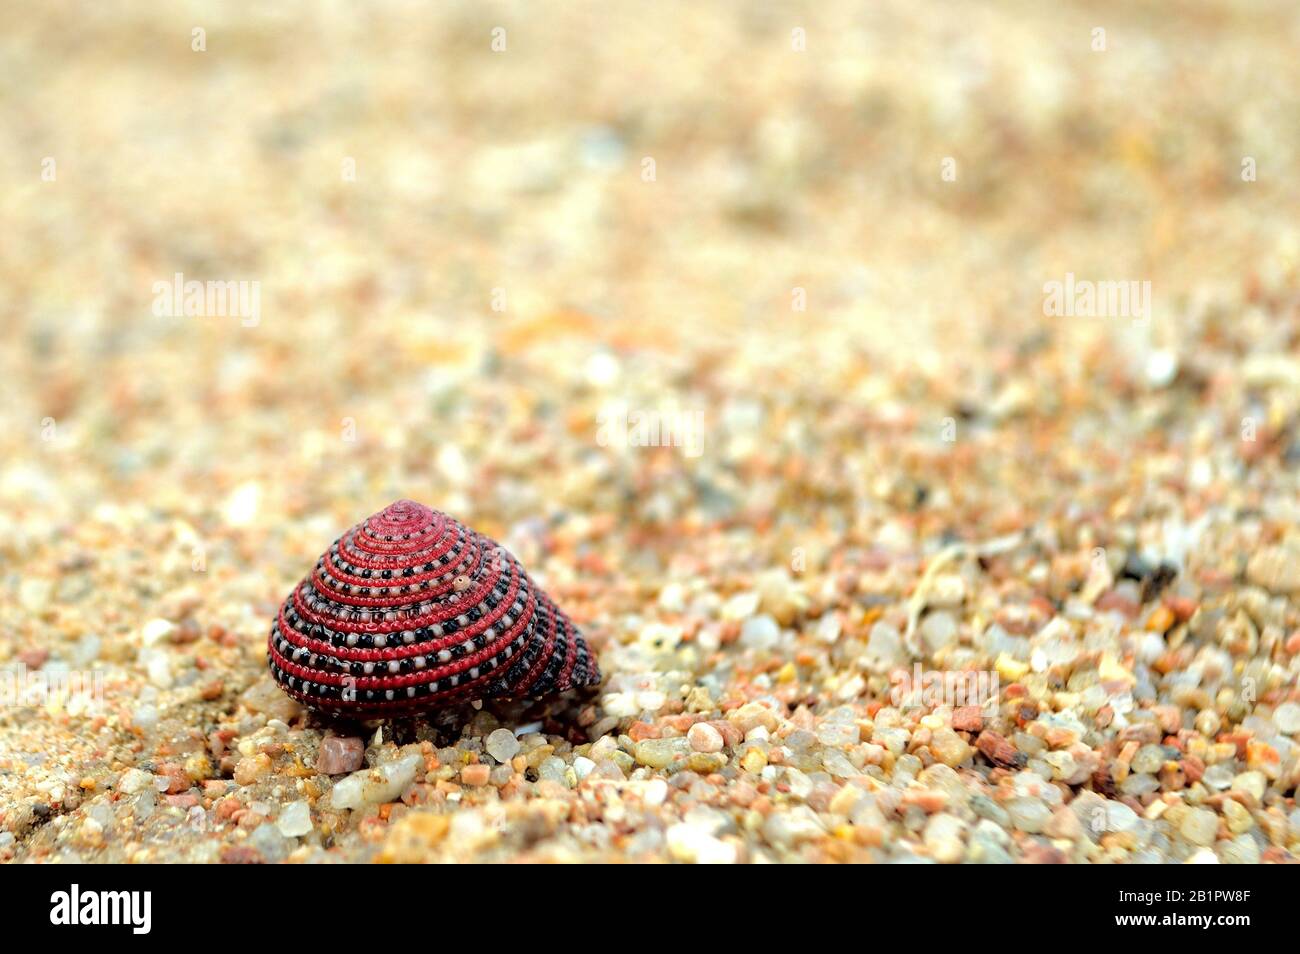 Magnifique seashell coloré sur le sable de plage. Seashell rouge, noir et blanc sur sable pastel jaune. Coque de crabe de plage sur le sable seul. Hermit crabes coquille. Banque D'Images